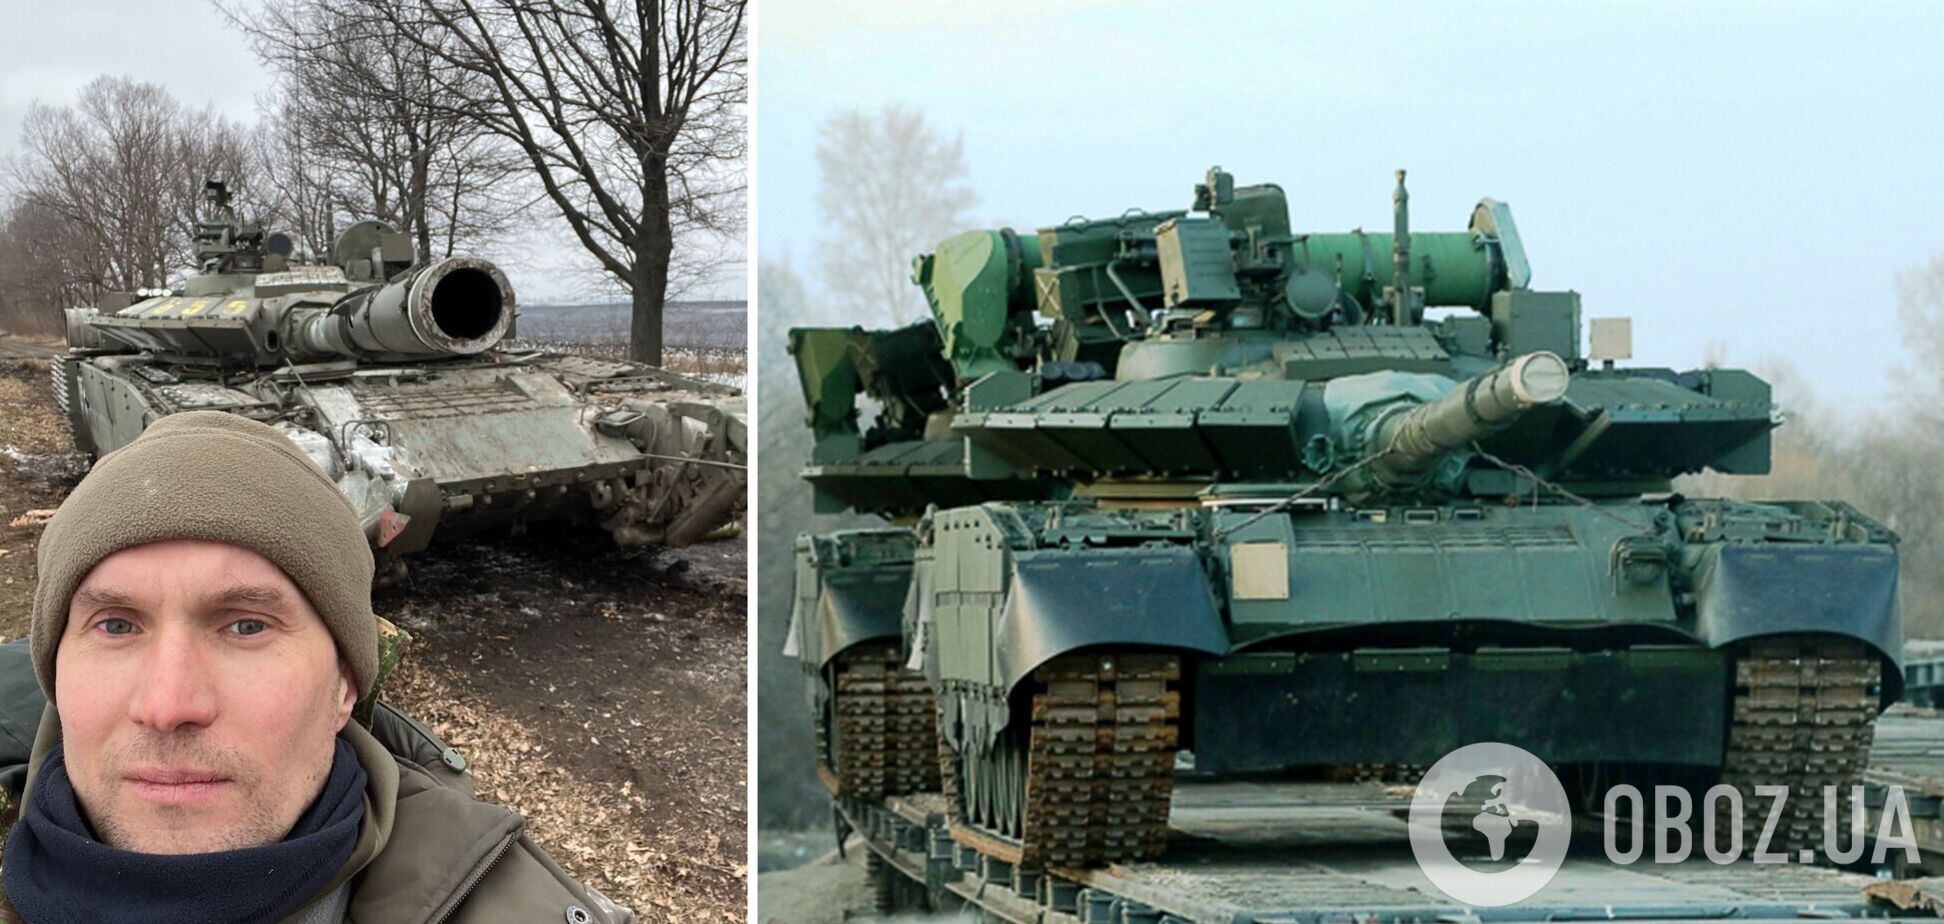 ВСУ захватили шесть новейших российских танков Т-80БВМ под Харьковом. Фото трофеев